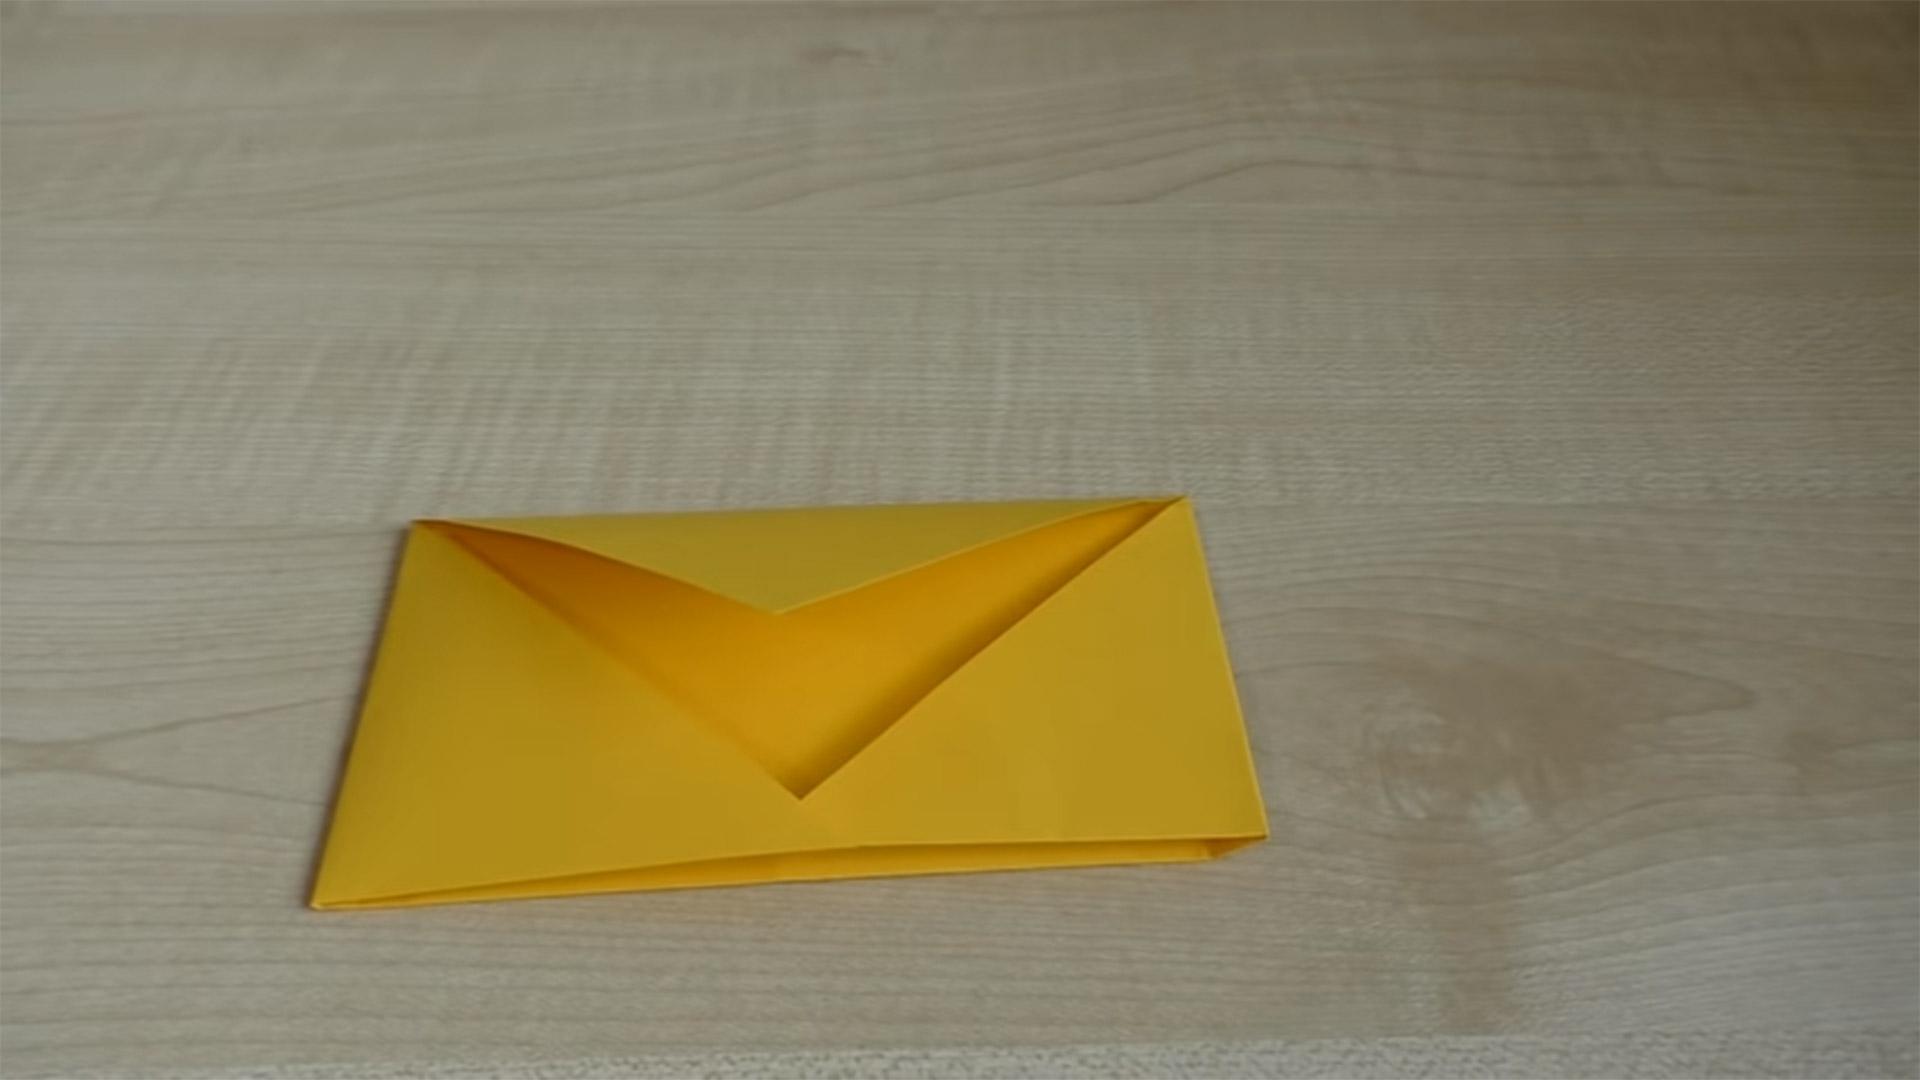 13 вариантов подарков из бумаги, которые можно сделать своими руками